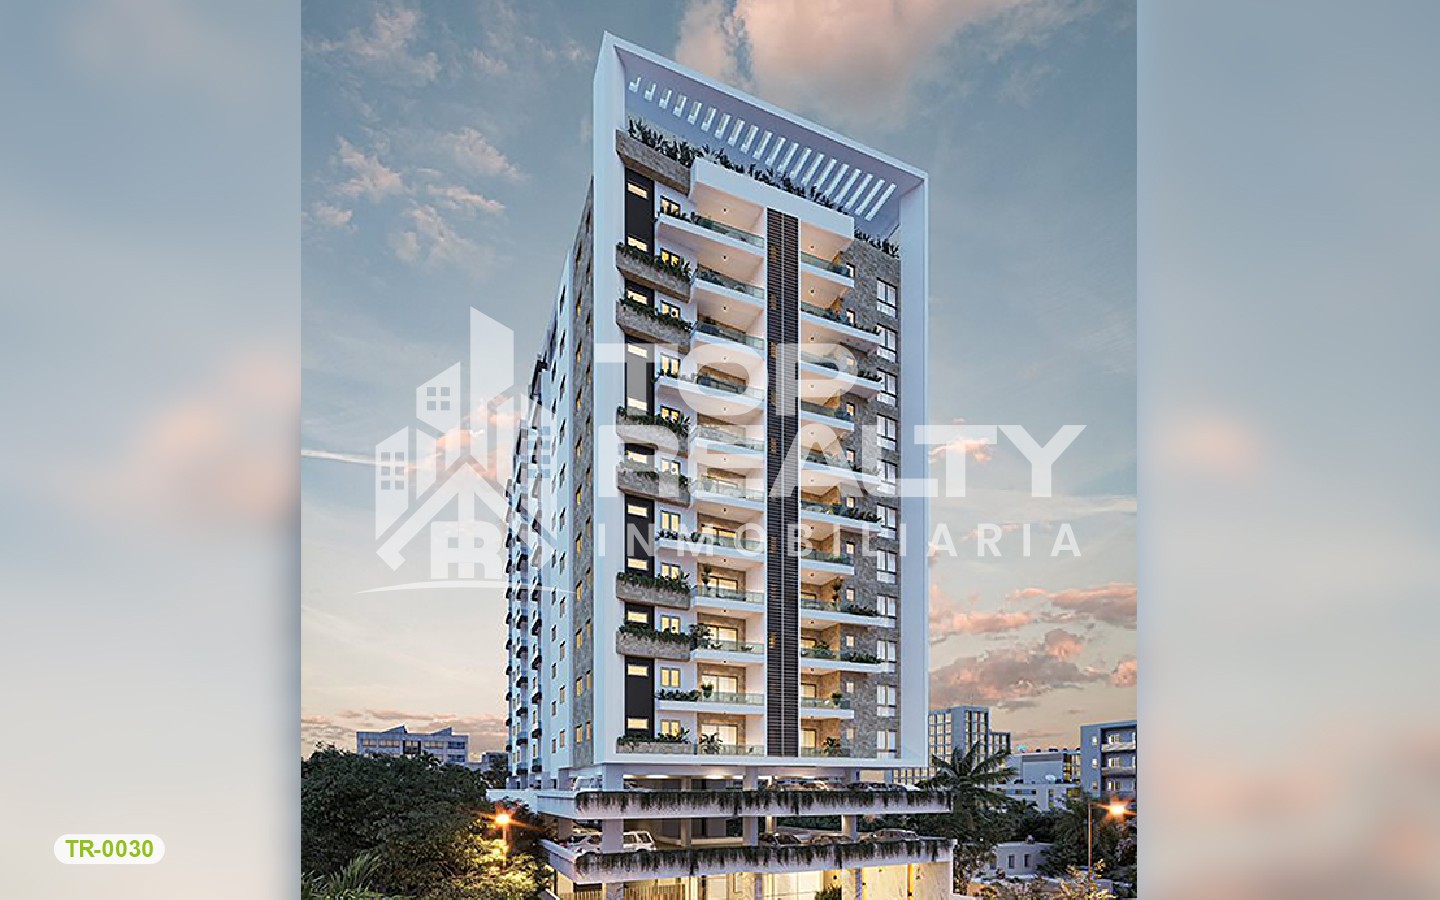 apartamentos - TR-0030A: Propuesta residencial: diseño arquitectónico excepcional.